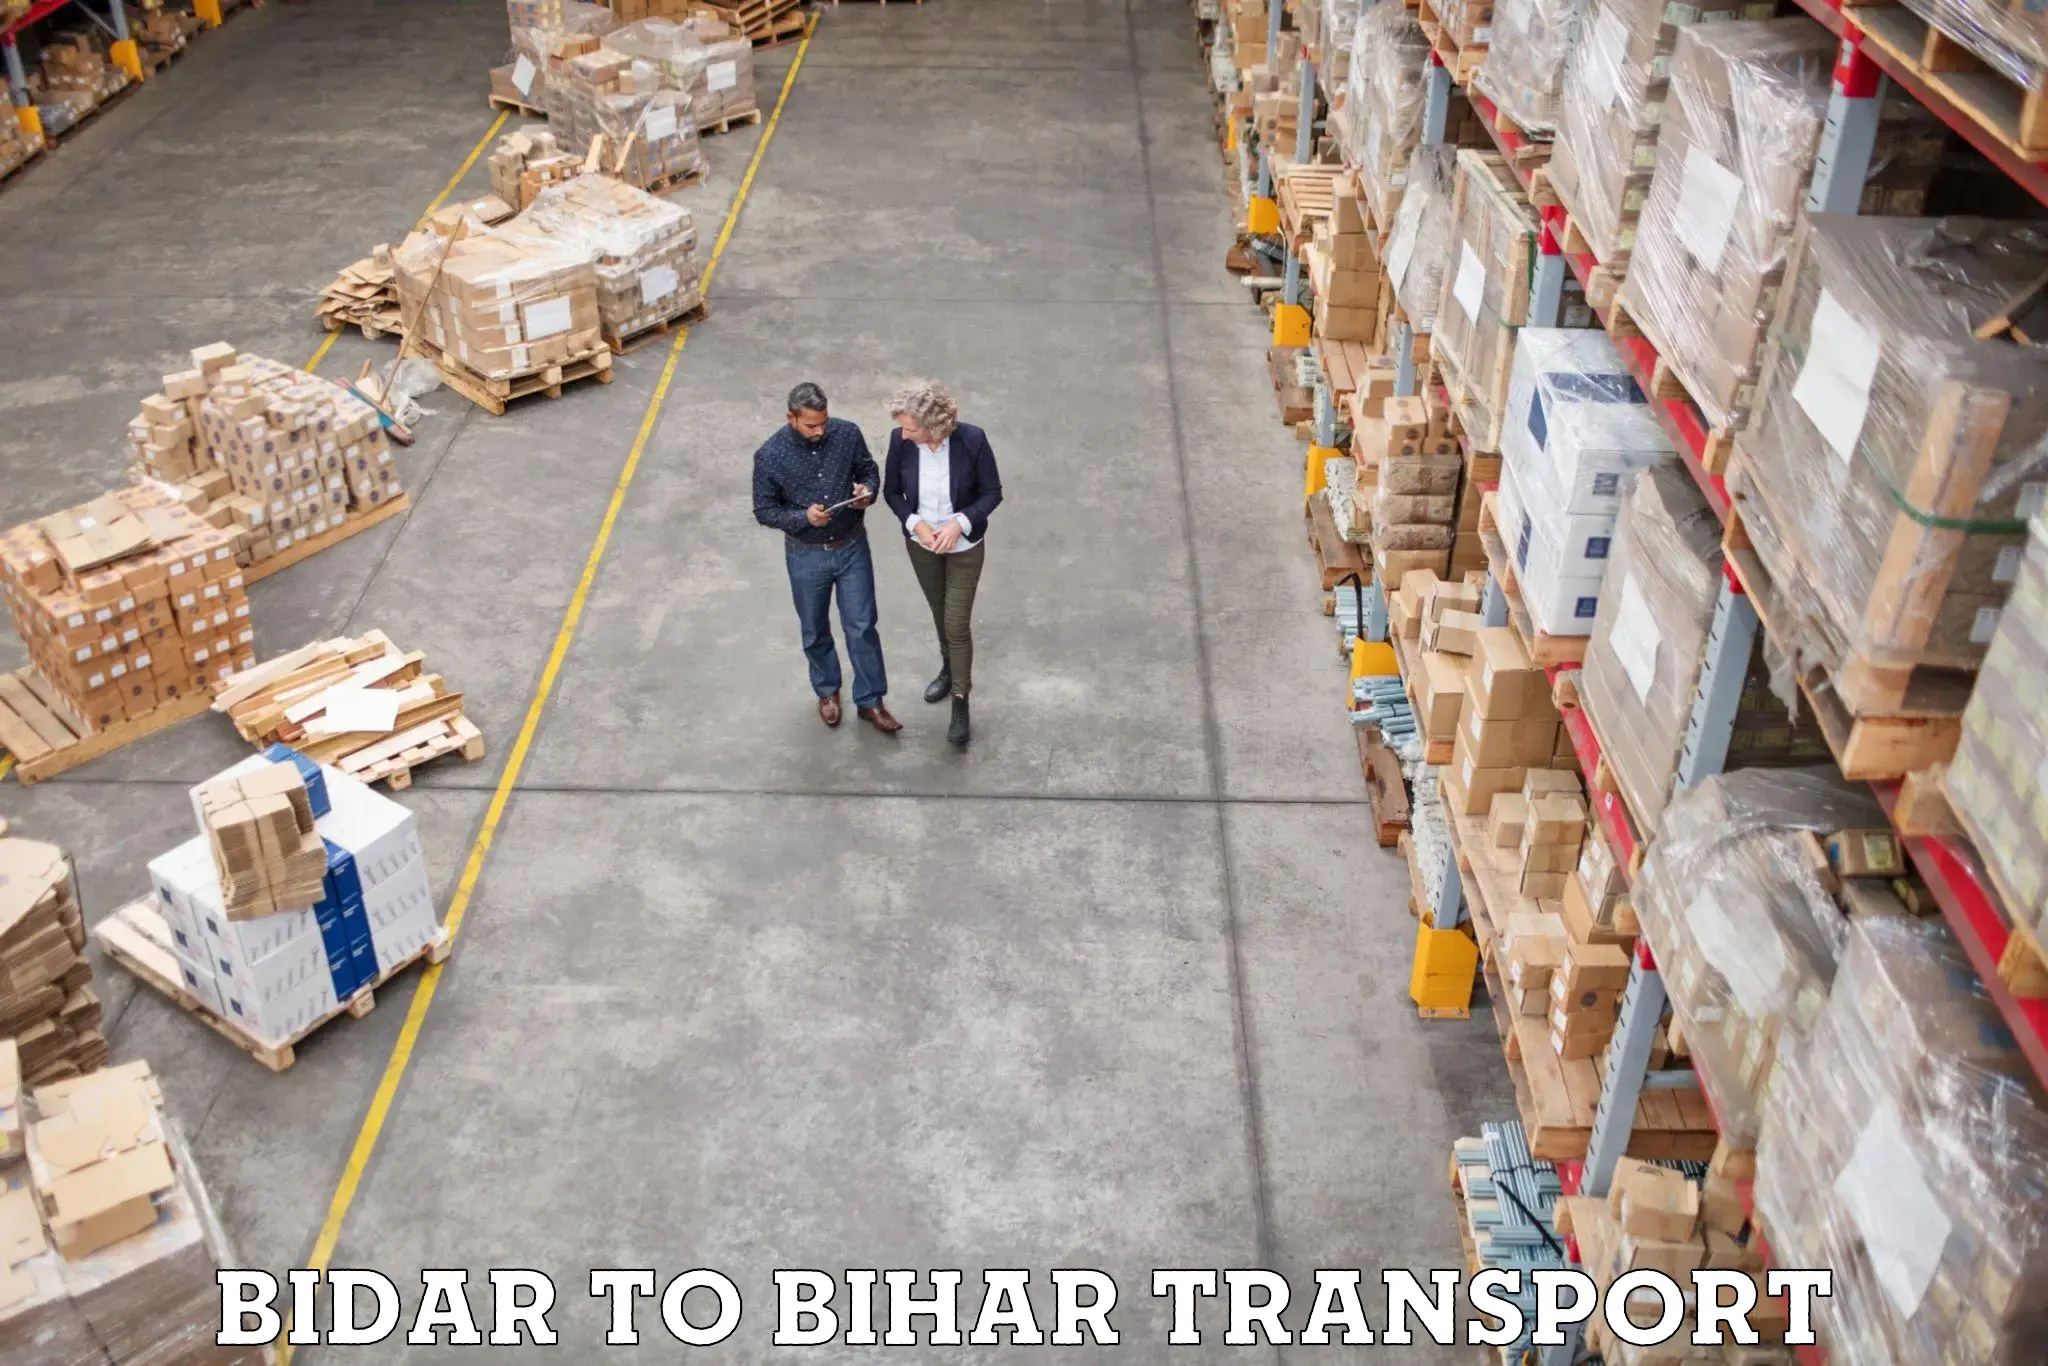 Daily transport service Bidar to Benipur